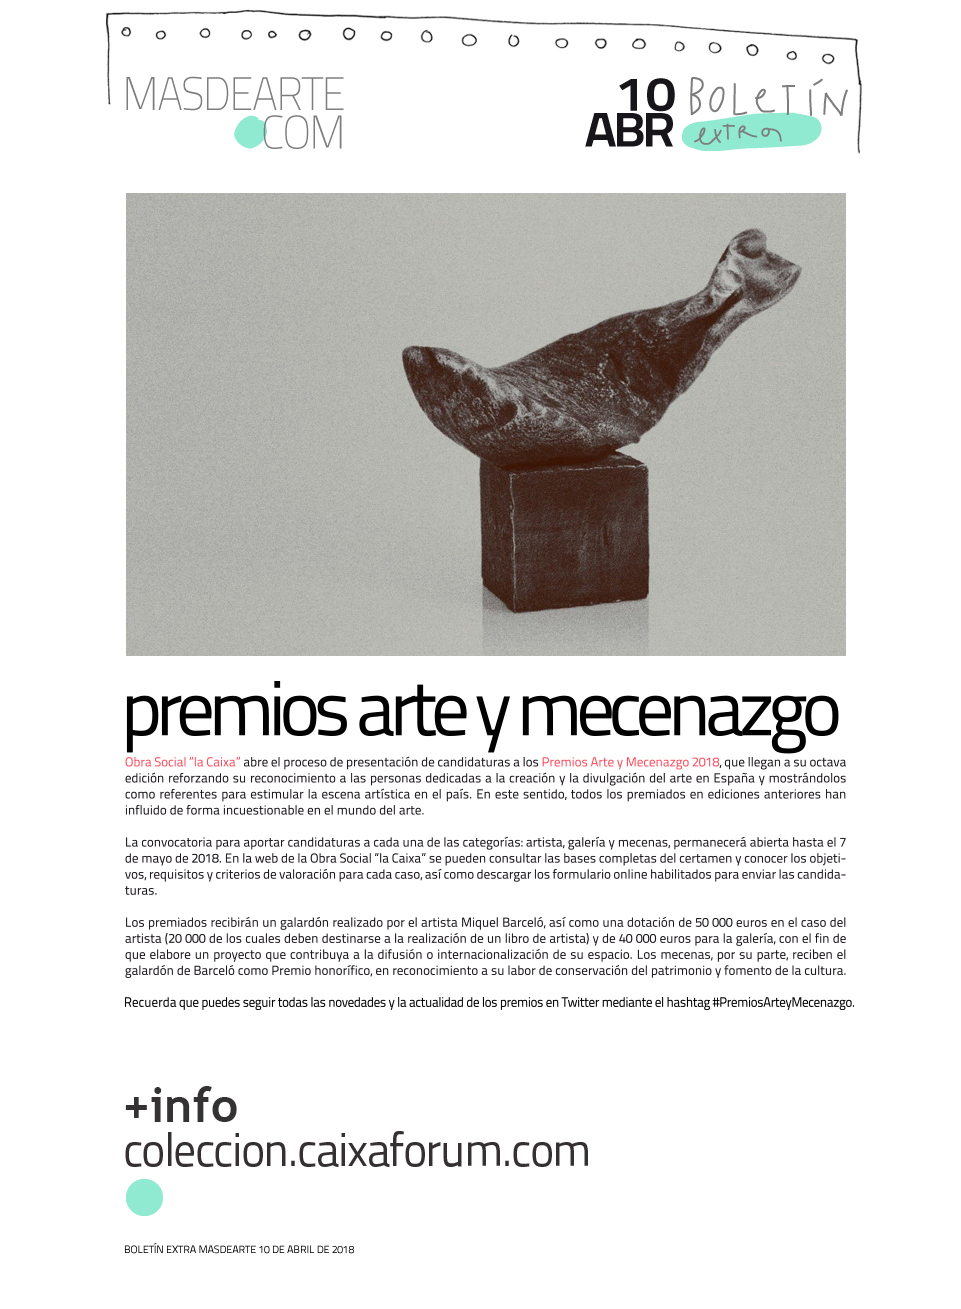 Extra masdearte: Premios Arte y Mecenazgo 2018. Ya puedes presentar tus candidatos.